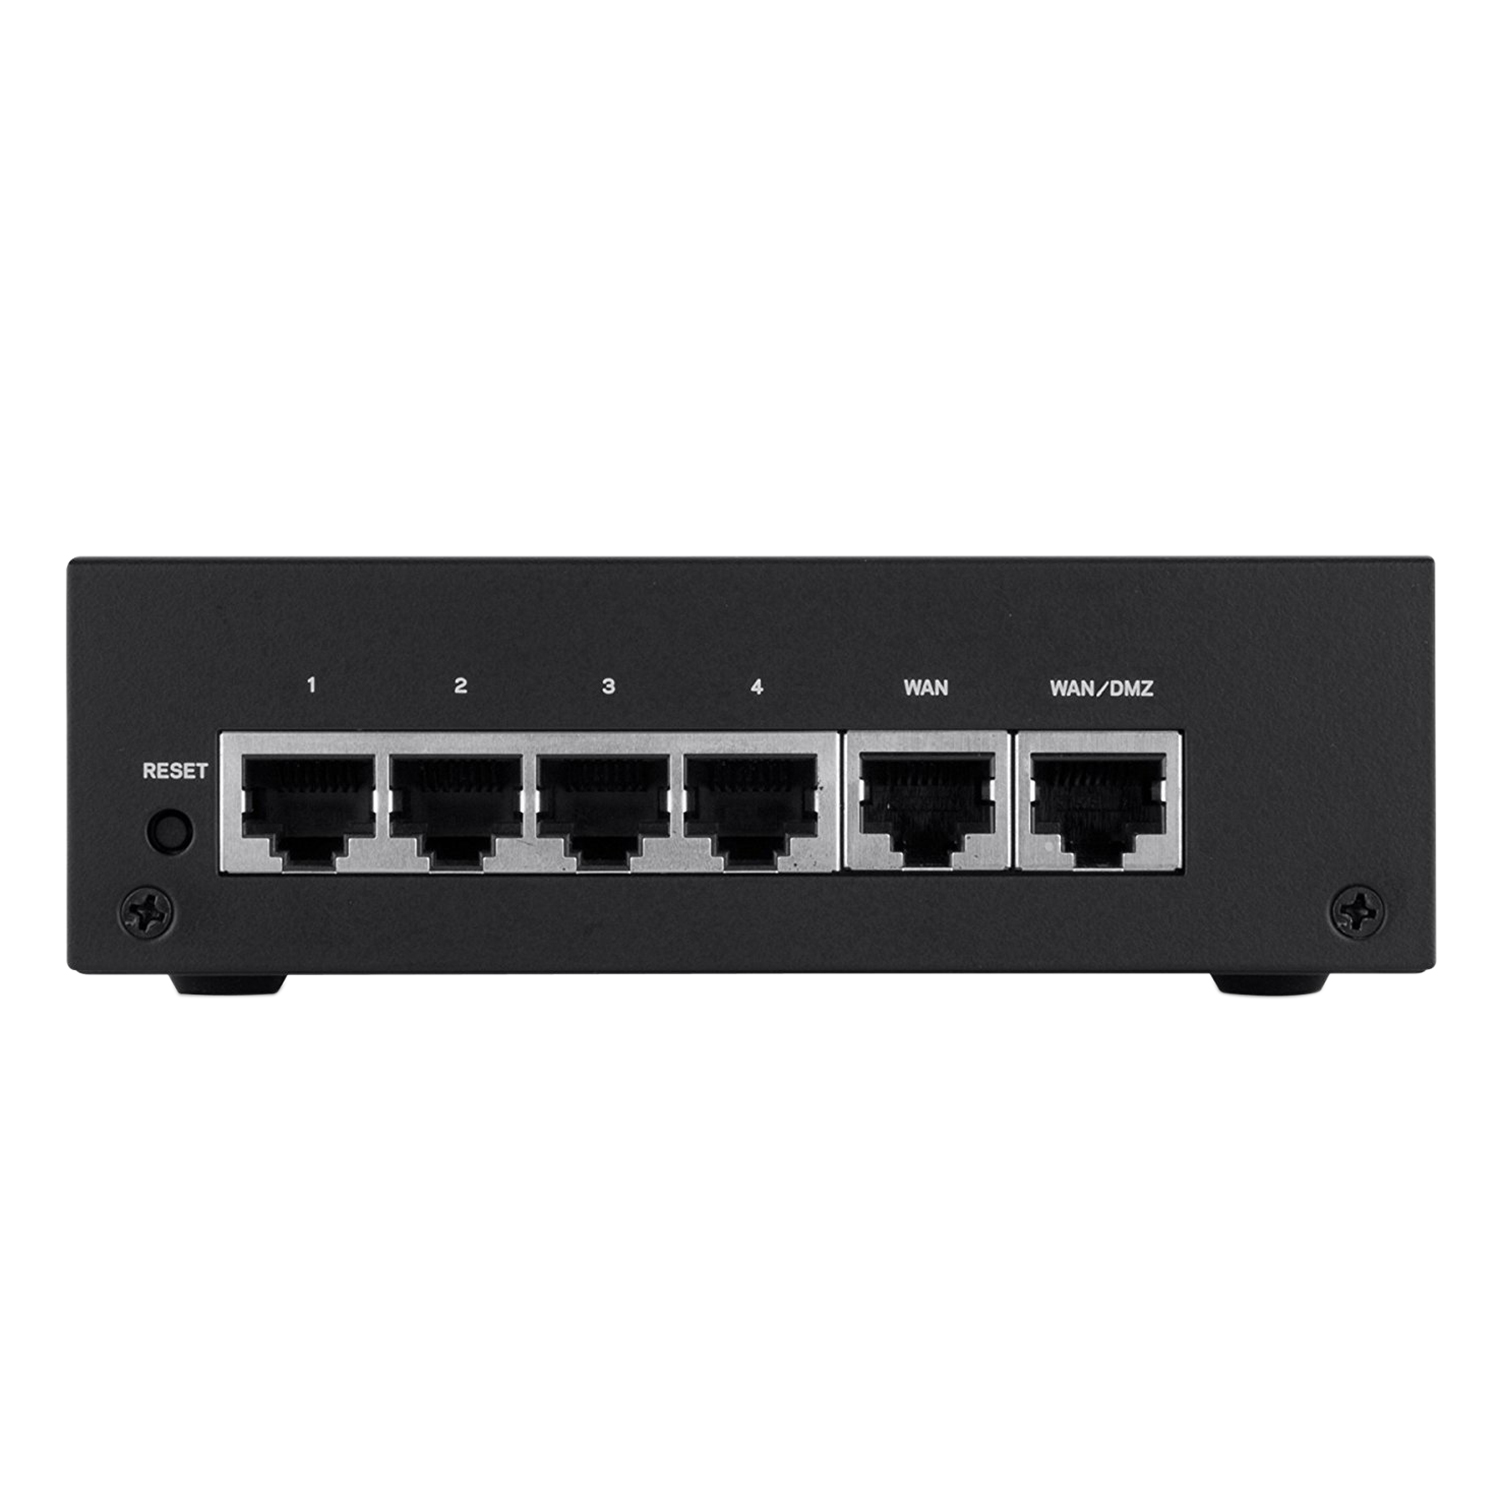 Linksys LRT224 - VPN Router - Hàng chính hãng